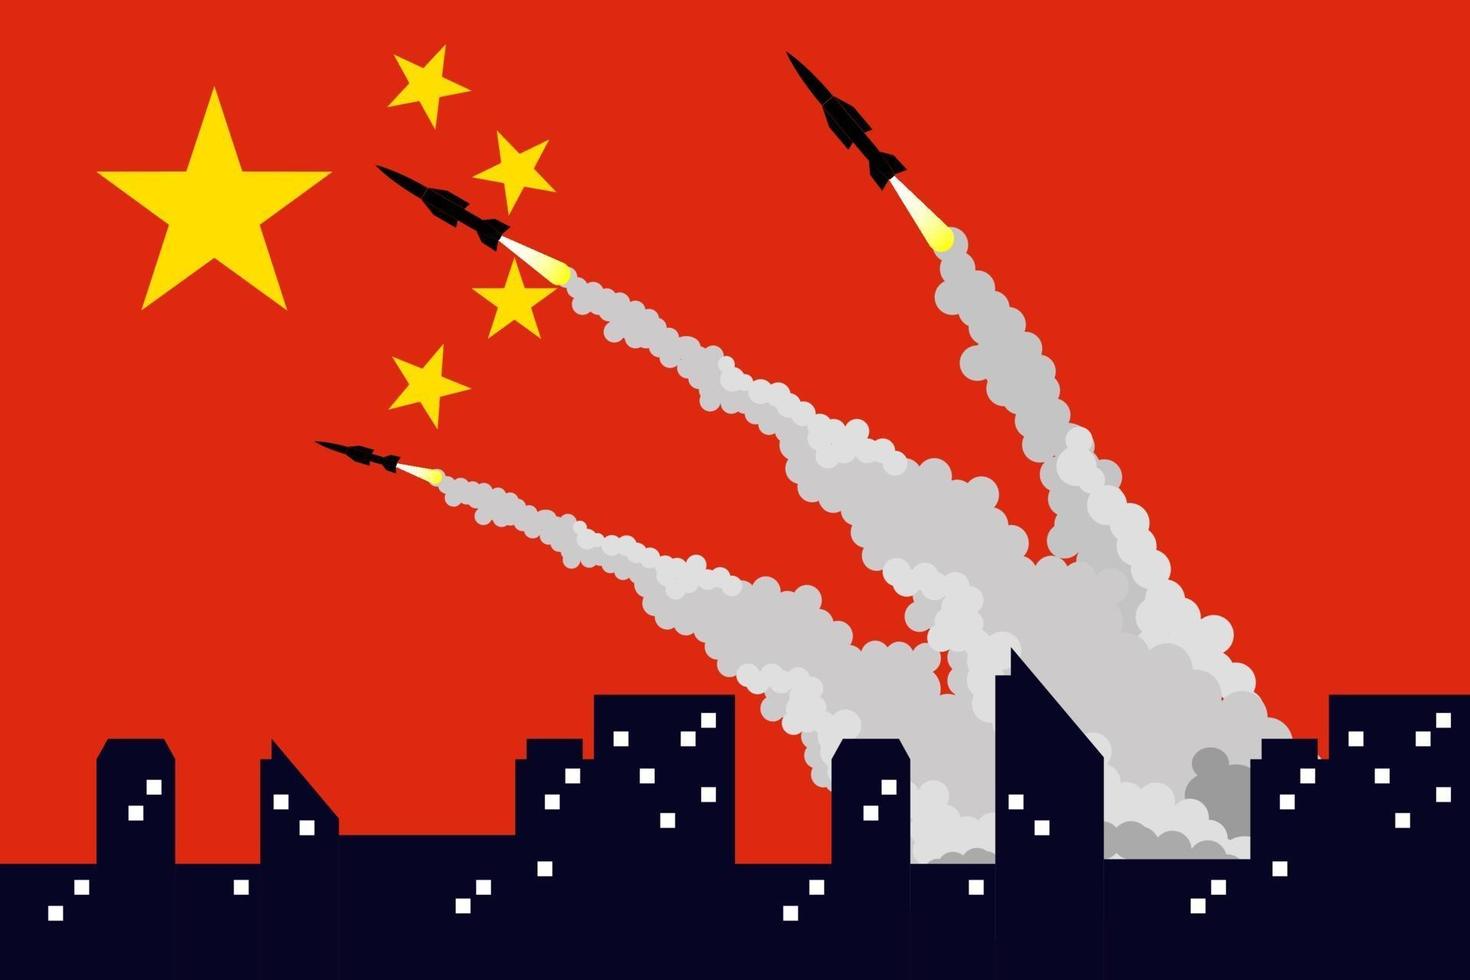 ilustração de disparar mísseis no fundo da bandeira da china. vetor